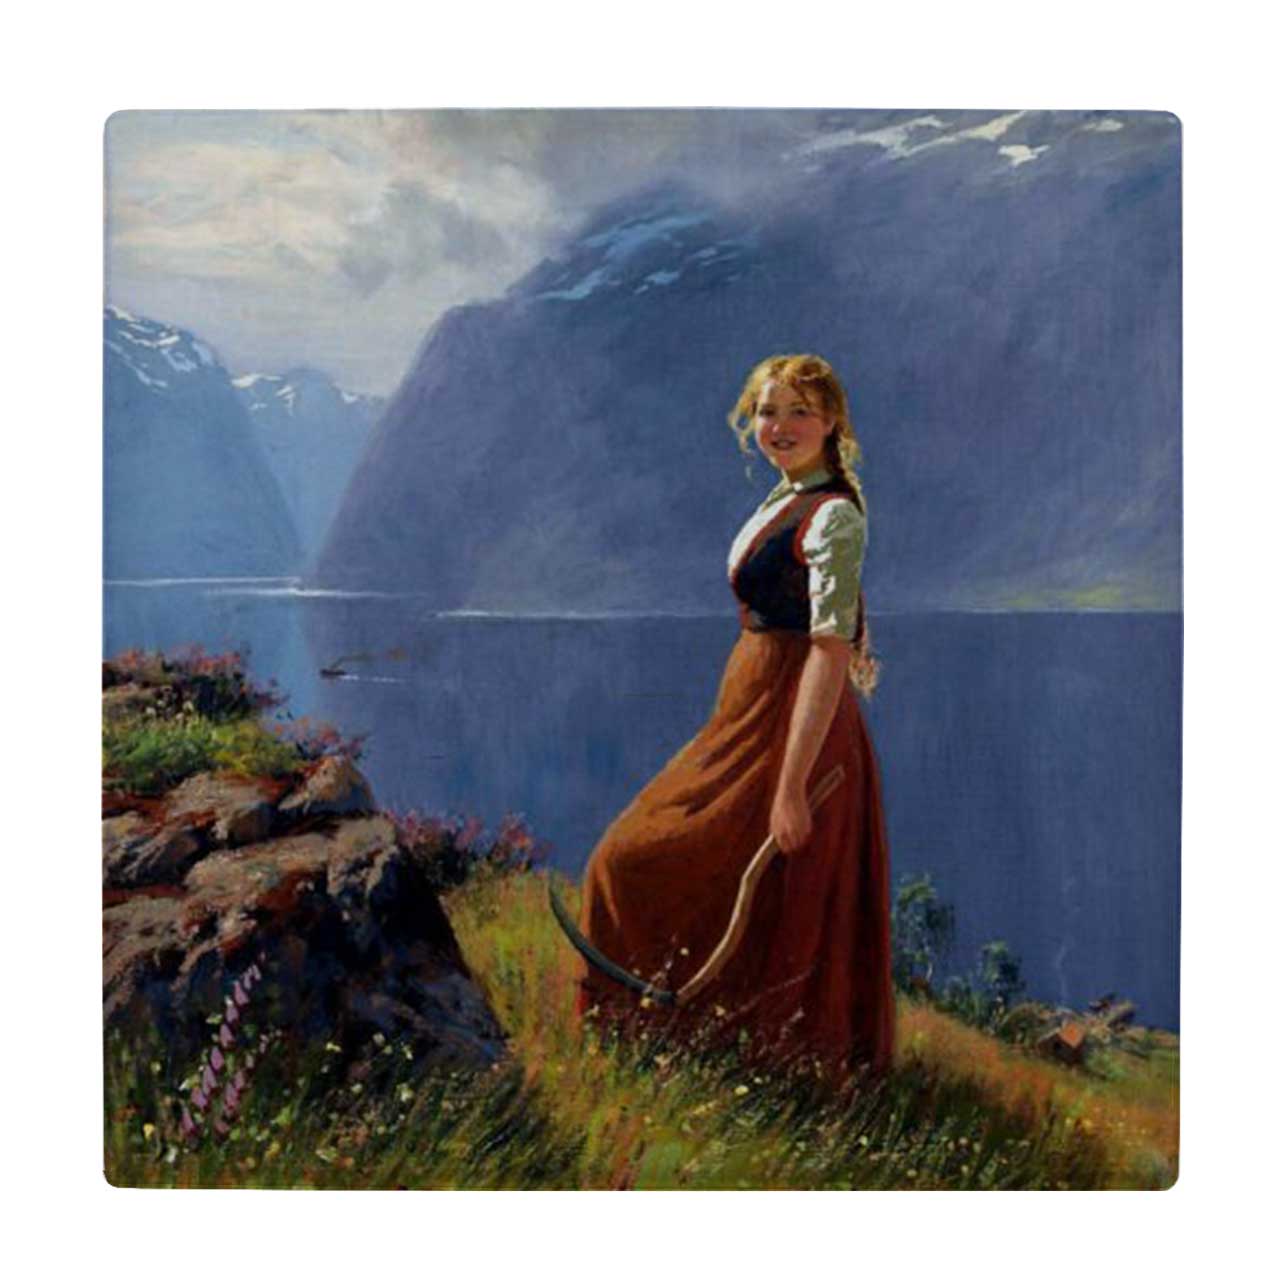  زیر لیوانی طرح نقاشی دختر روستایی و منظره کوهستانی کد 6189861_5567